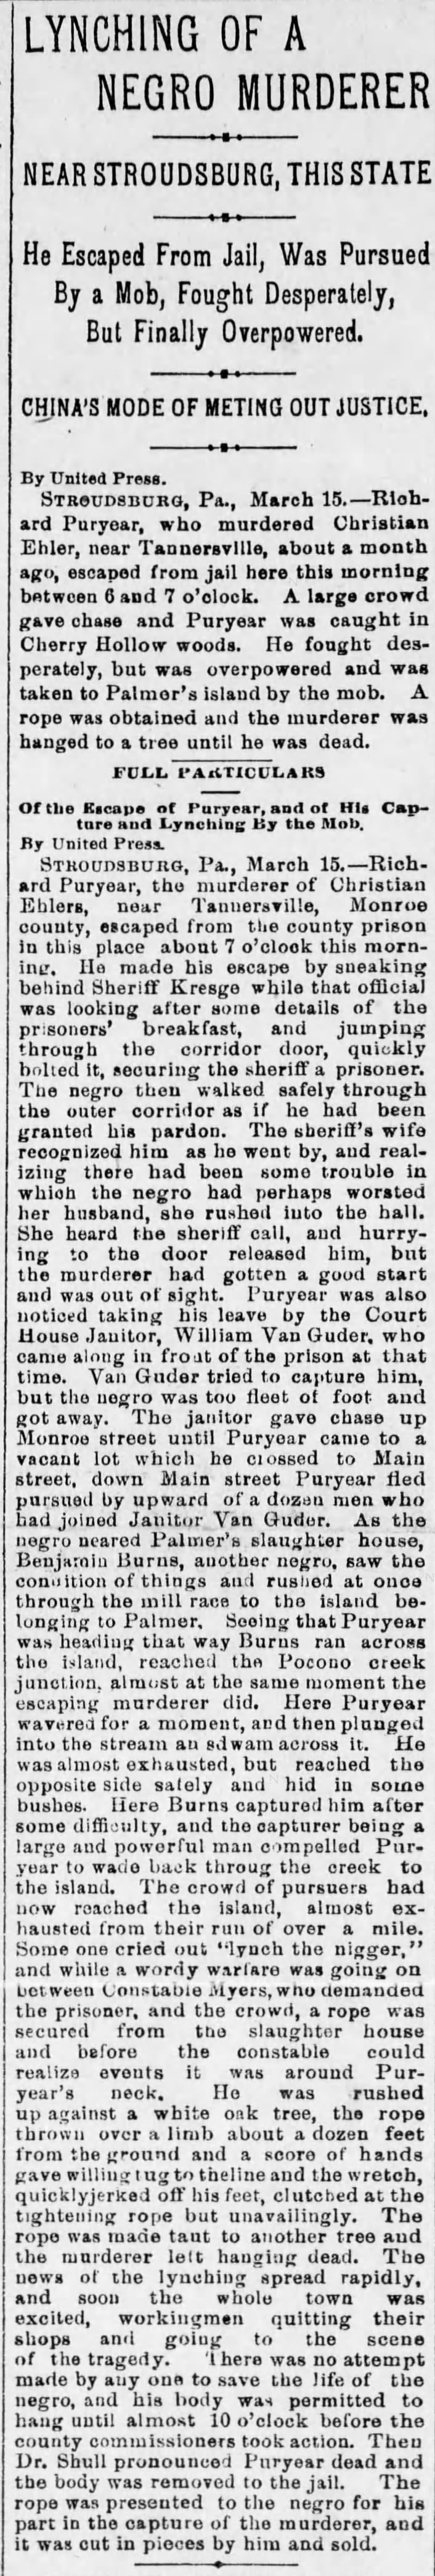 Harrisburg Dailey Independent  3/15/1894  Puryear